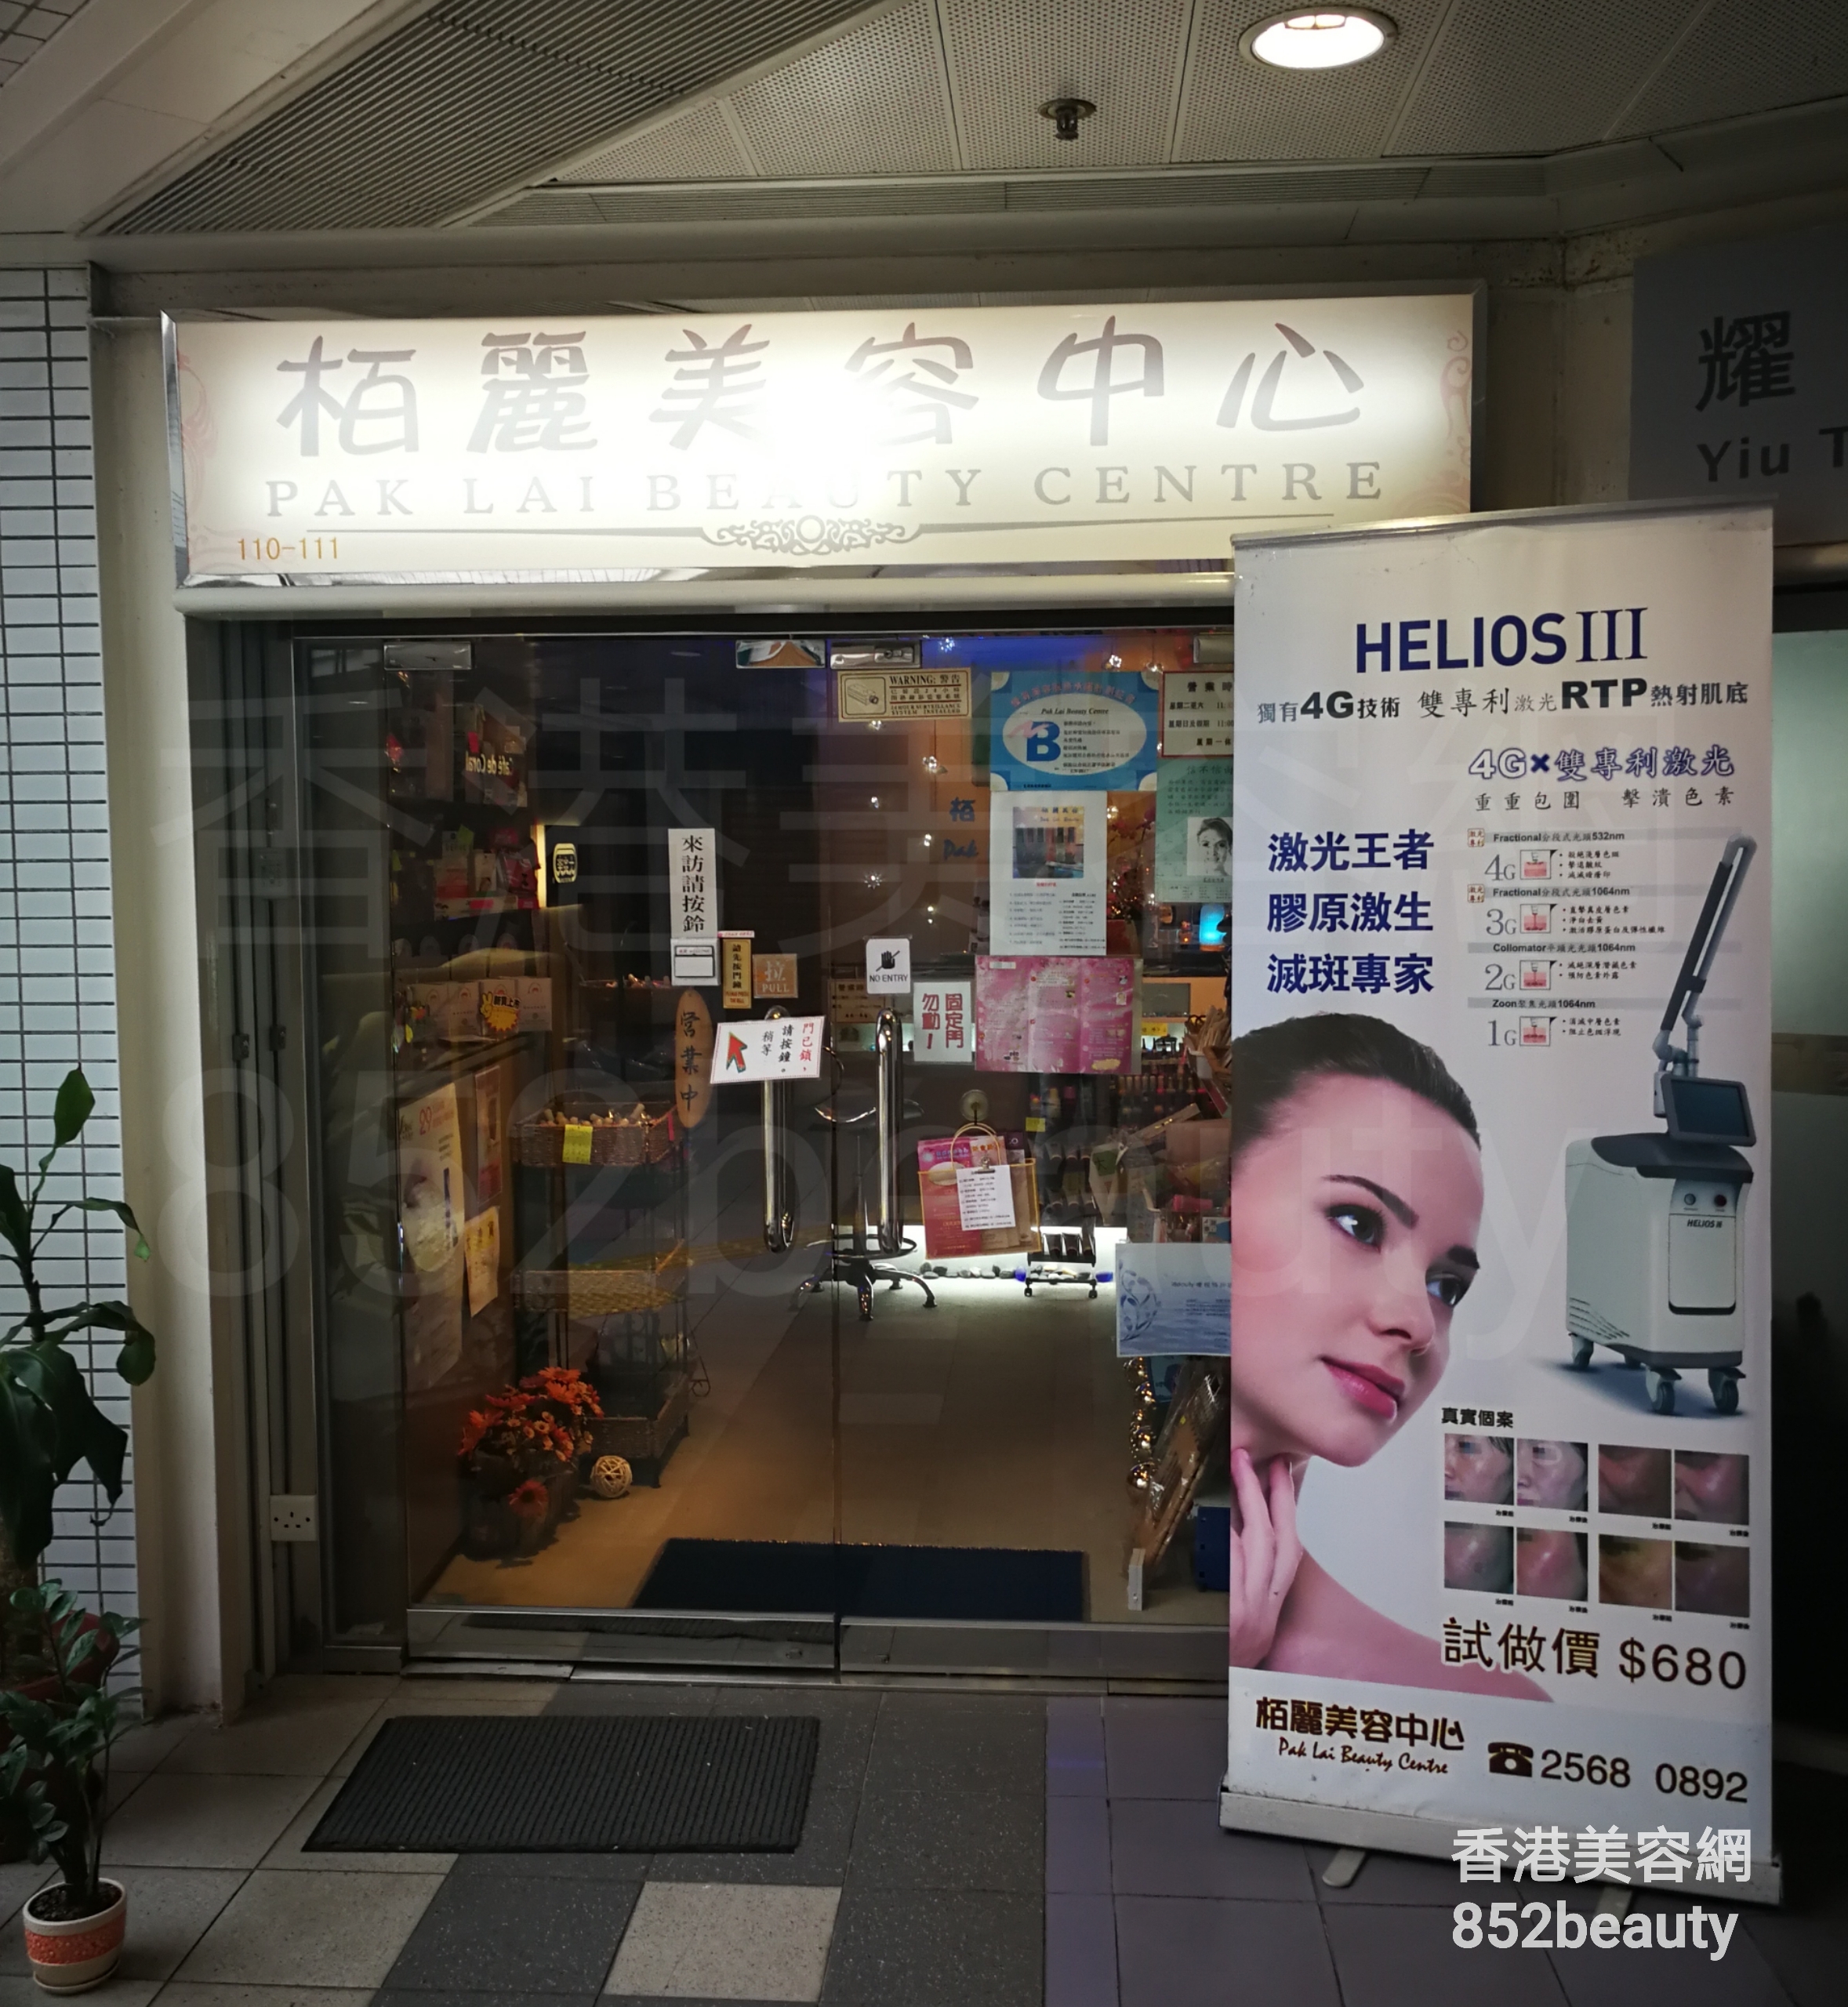 美容院 Beauty Salon: 栢麗美容中心